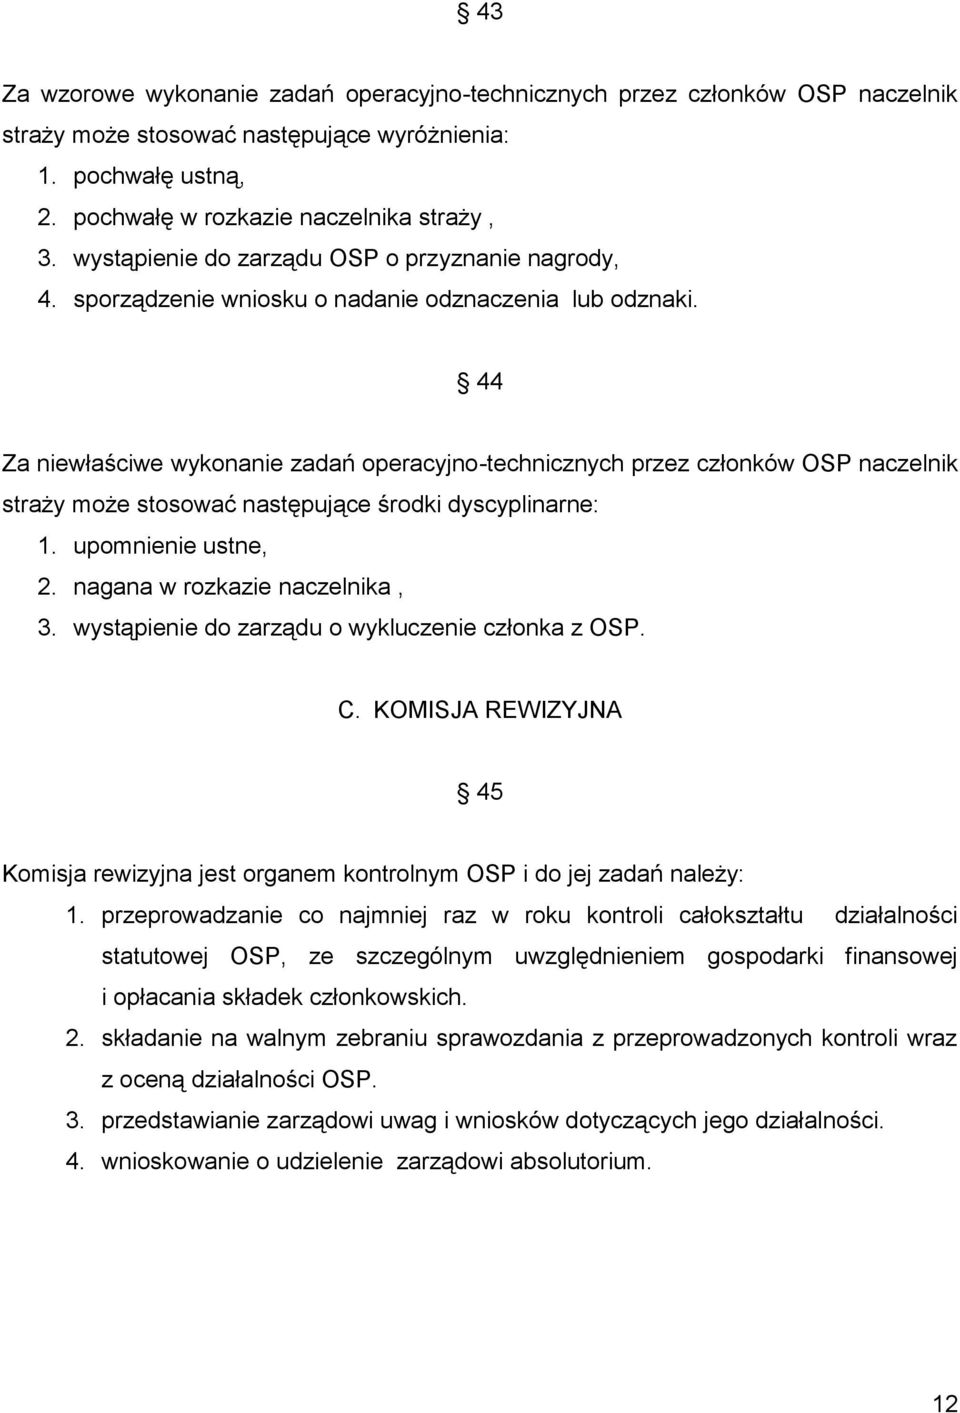 44 Za niewłaściwe wykonanie zadań operacyjno-technicznych przez członków OSP naczelnik straży może stosować następujące środki dyscyplinarne: 1. upomnienie ustne, 2. nagana w rozkazie naczelnika, 3.